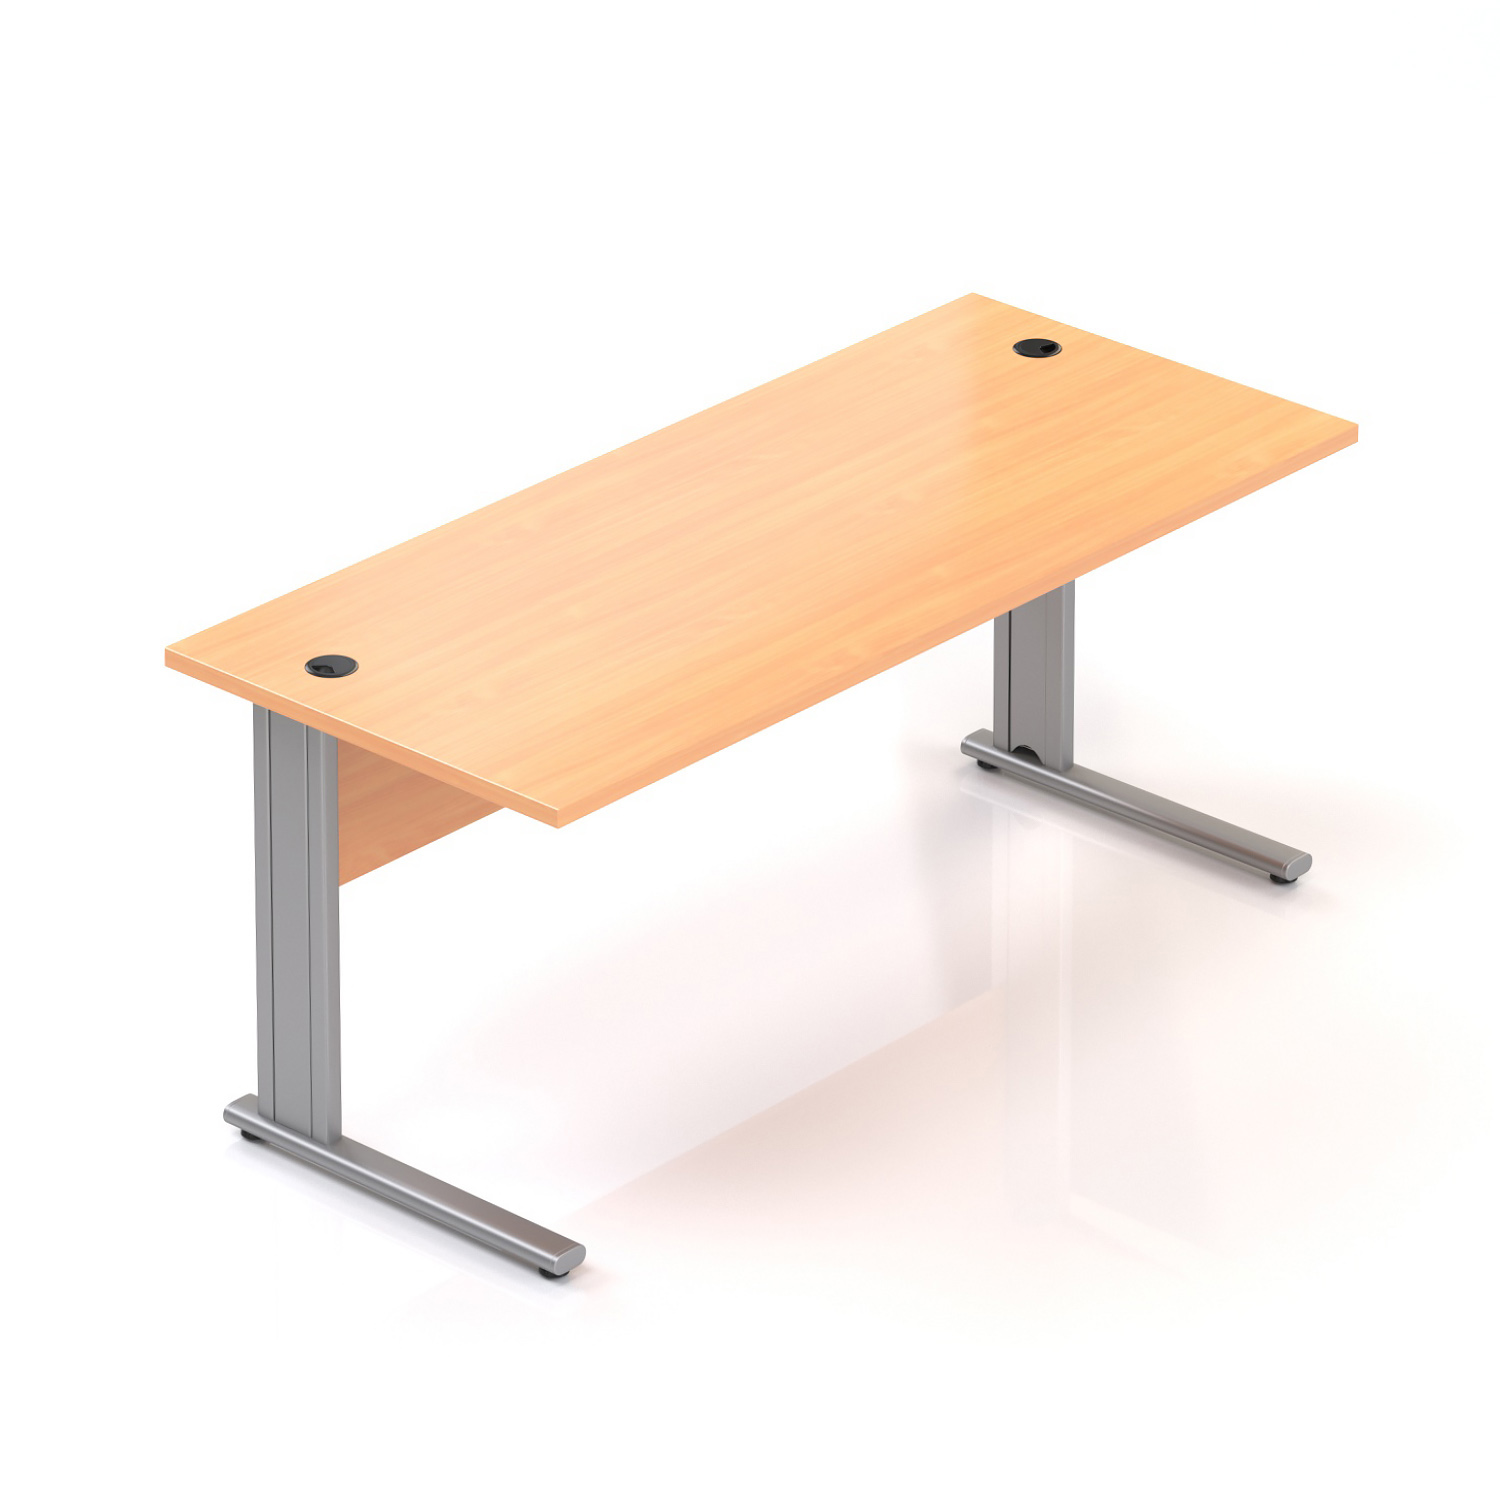 Kancelářský stůl Komfort, kovová podnož, 160x70x76cm BPR16 11